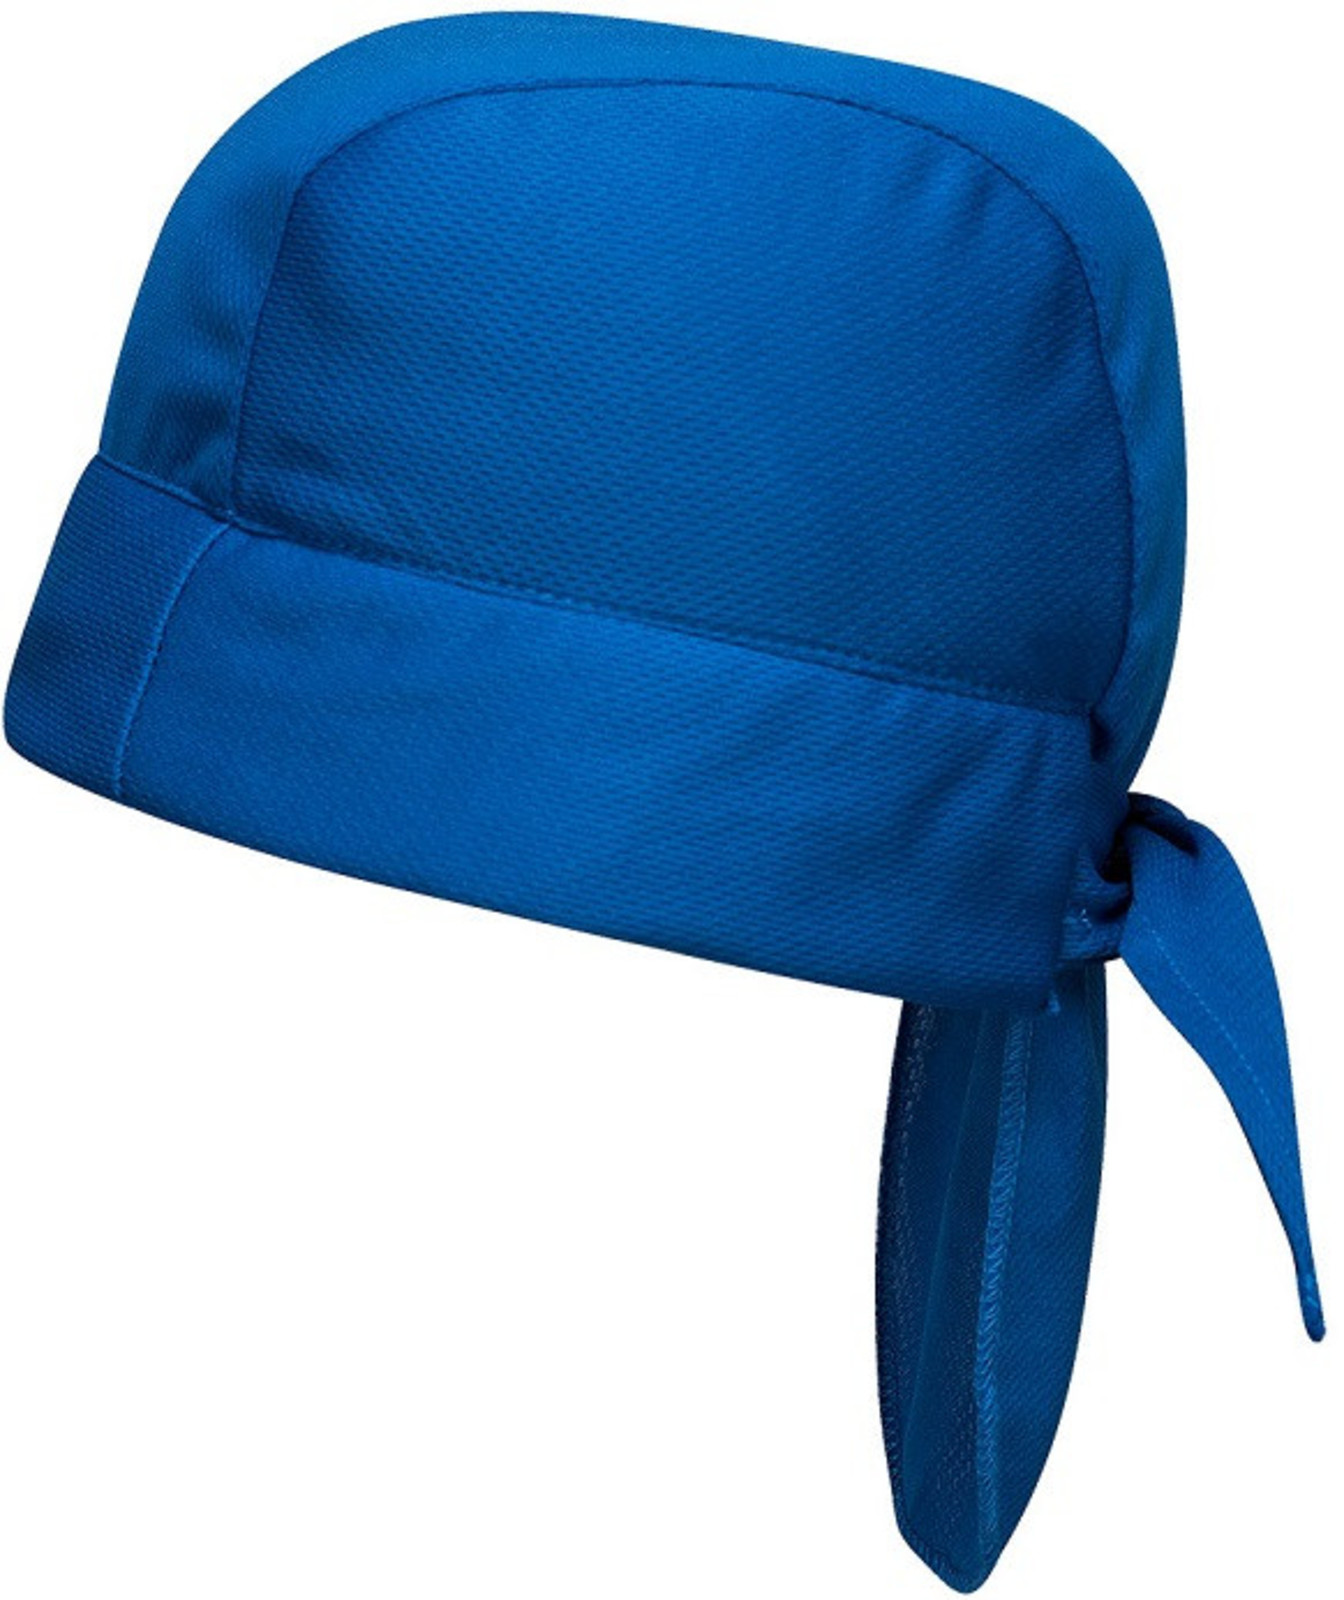 Chladiaca šatka na hlavu Portwest CV04  - farba: modrá